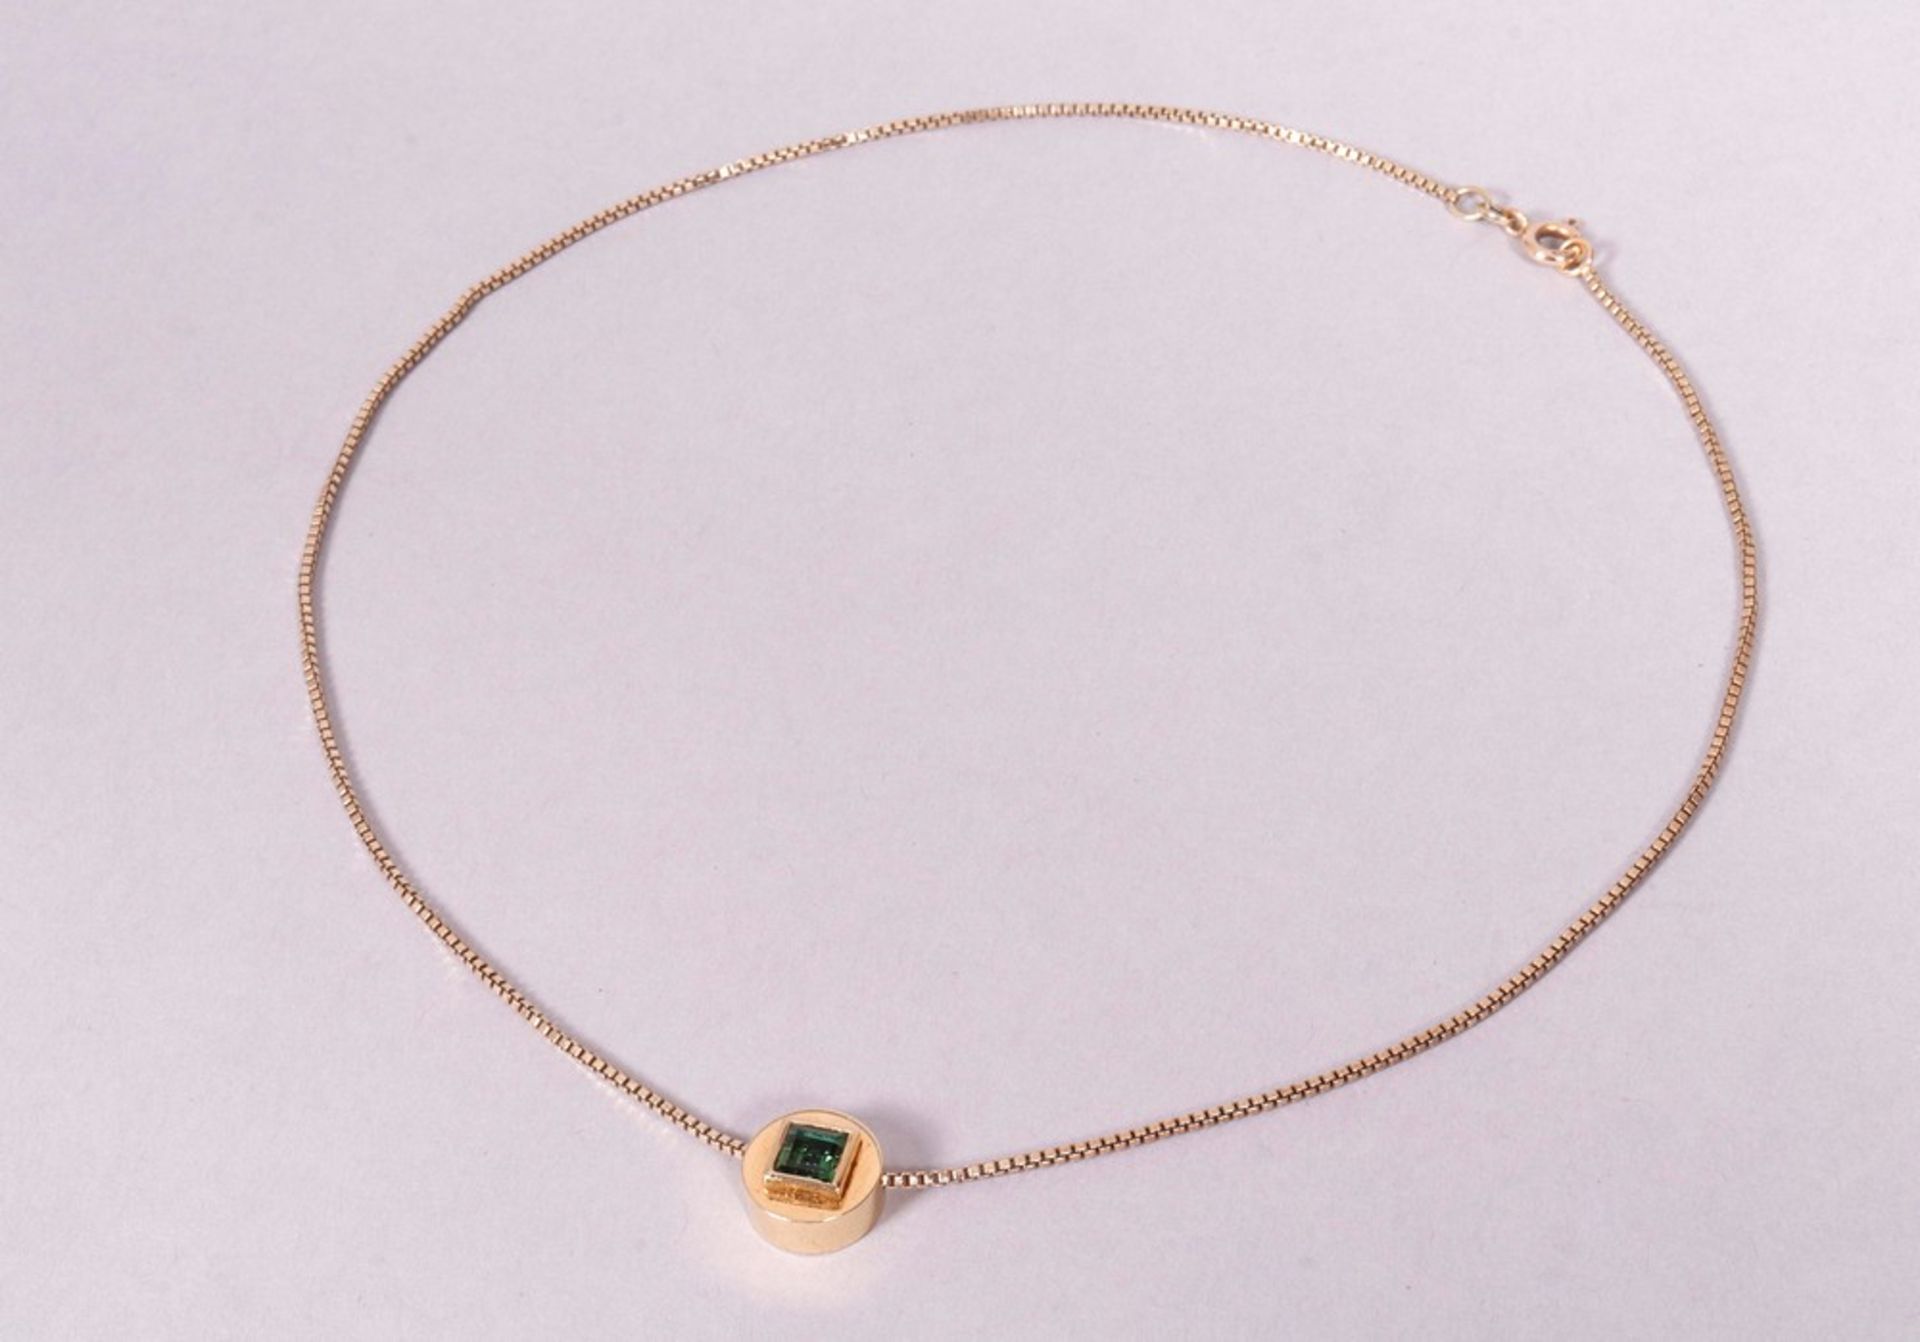 Collier und Armband, 585/750er Gold, Juwelier Sack, Lübeck - Bild 3 aus 6